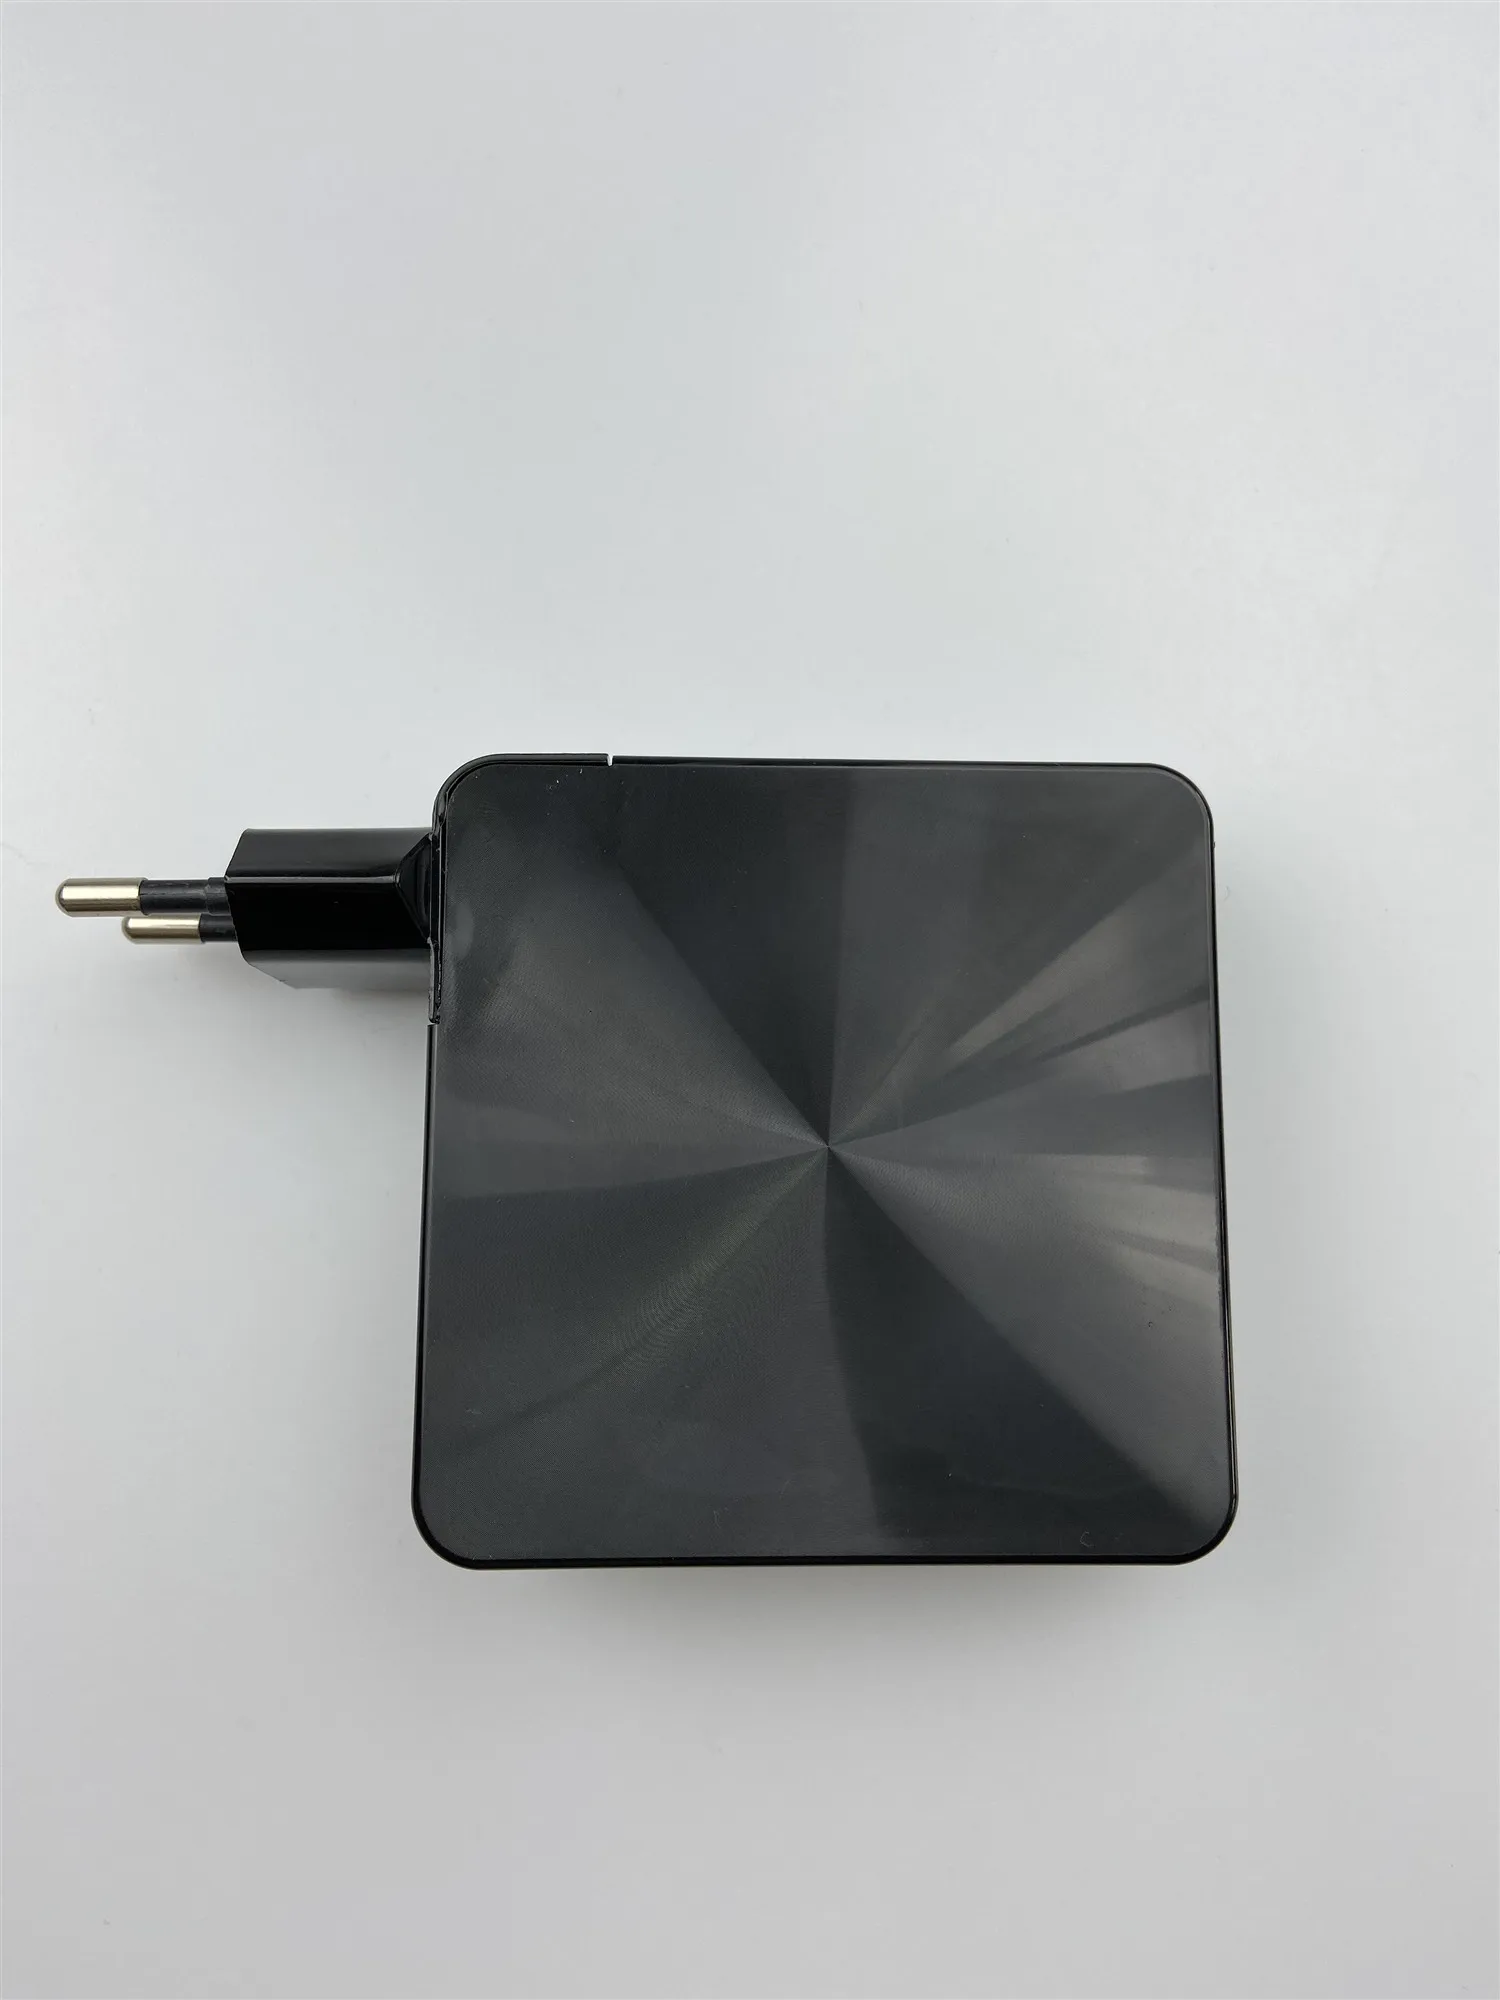 87 Вт USB-C type C AC зарядное устройство для ноутбука MacBook Pro 12 13 15 дюймов и другие USB C ноутбуки колодки или телефоны